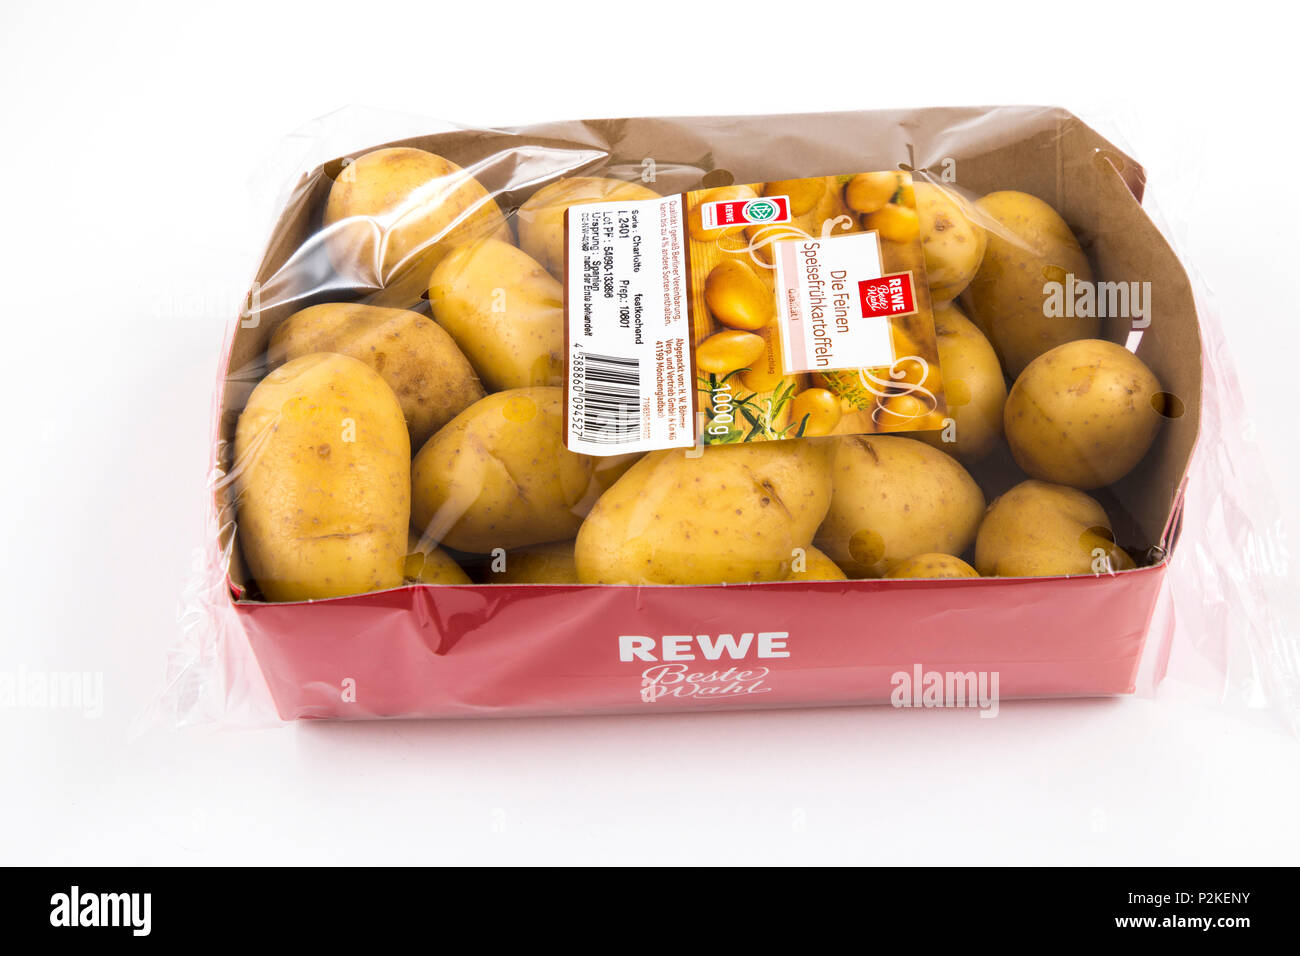 Les produits frais, légumes , chacun emballé individuellement dans une pellicule de plastique, toute la nourriture est disponible dans le même supermarché même sans emballage plastique, spr Banque D'Images